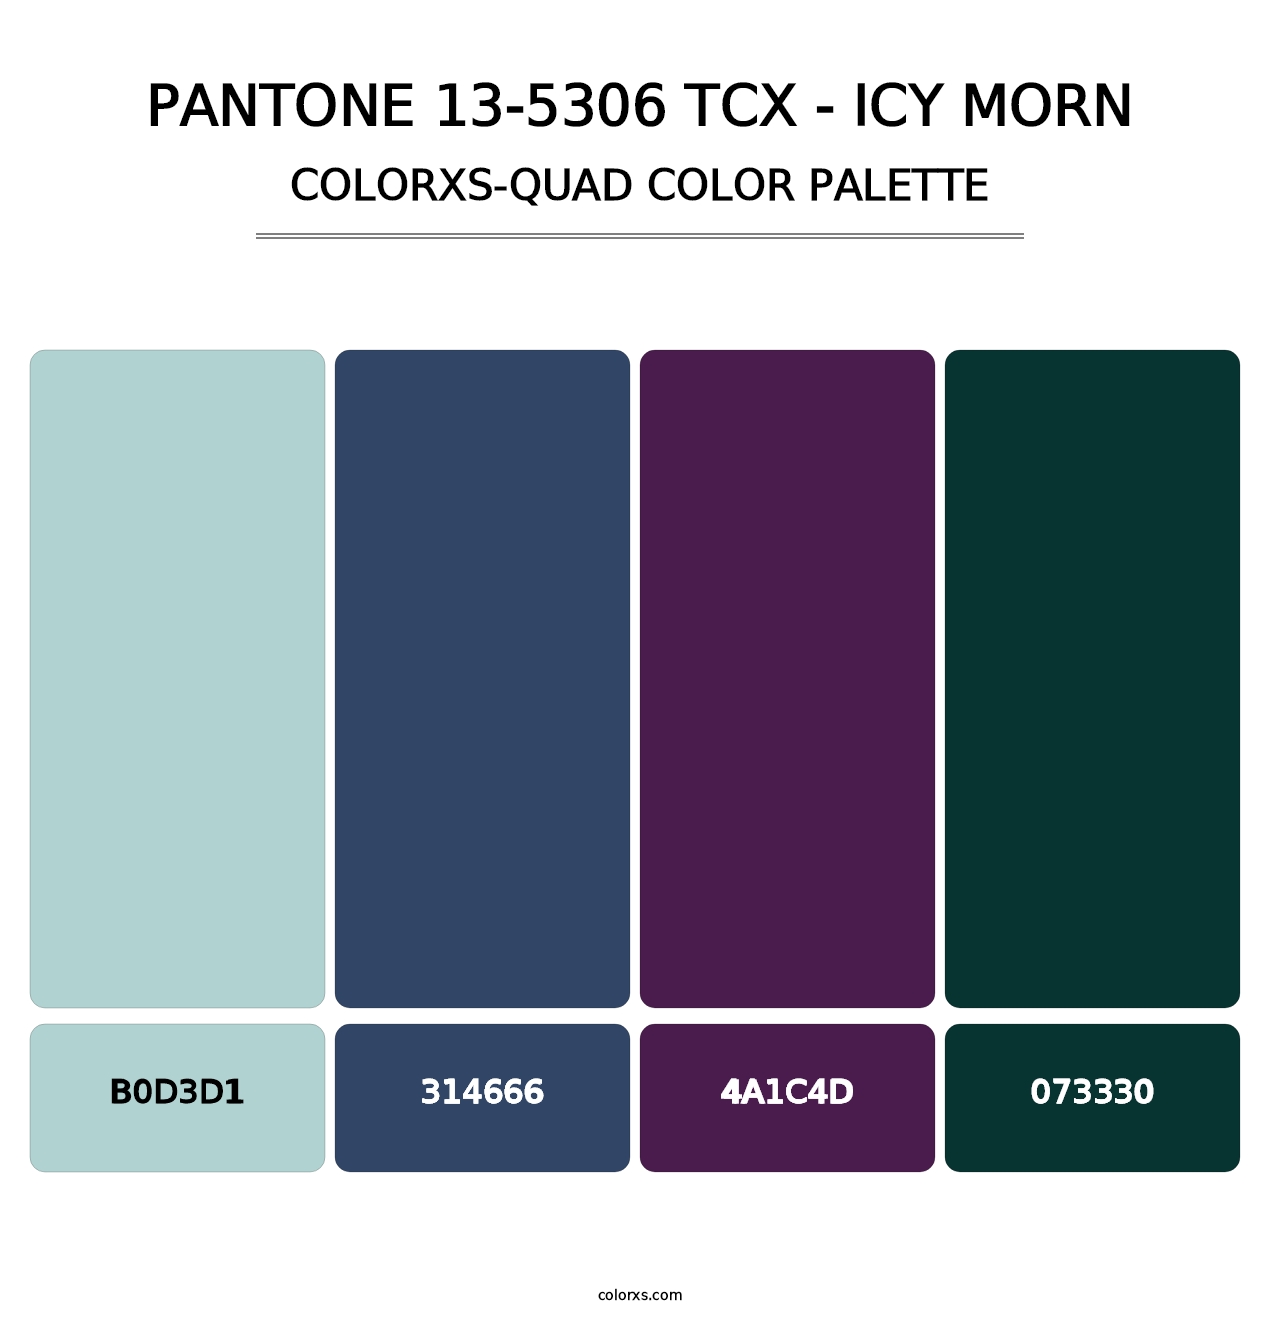 PANTONE 13-5306 TCX - Icy Morn - Colorxs Quad Palette